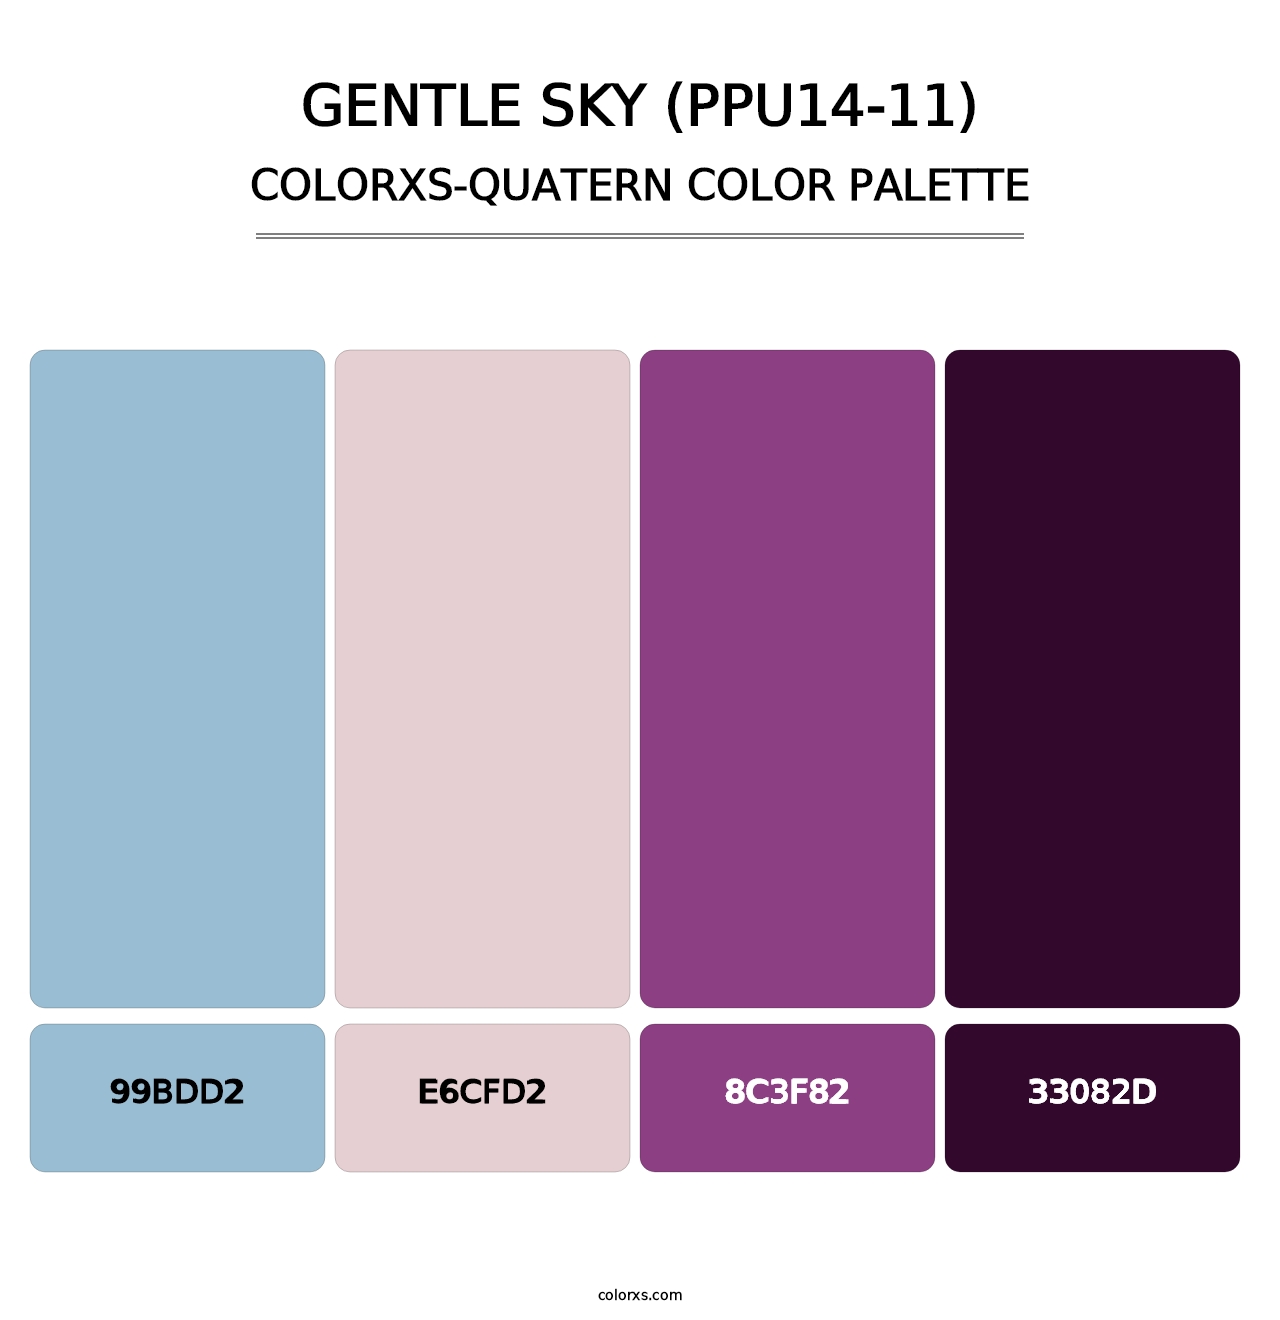 Gentle Sky (PPU14-11) - Colorxs Quatern Palette